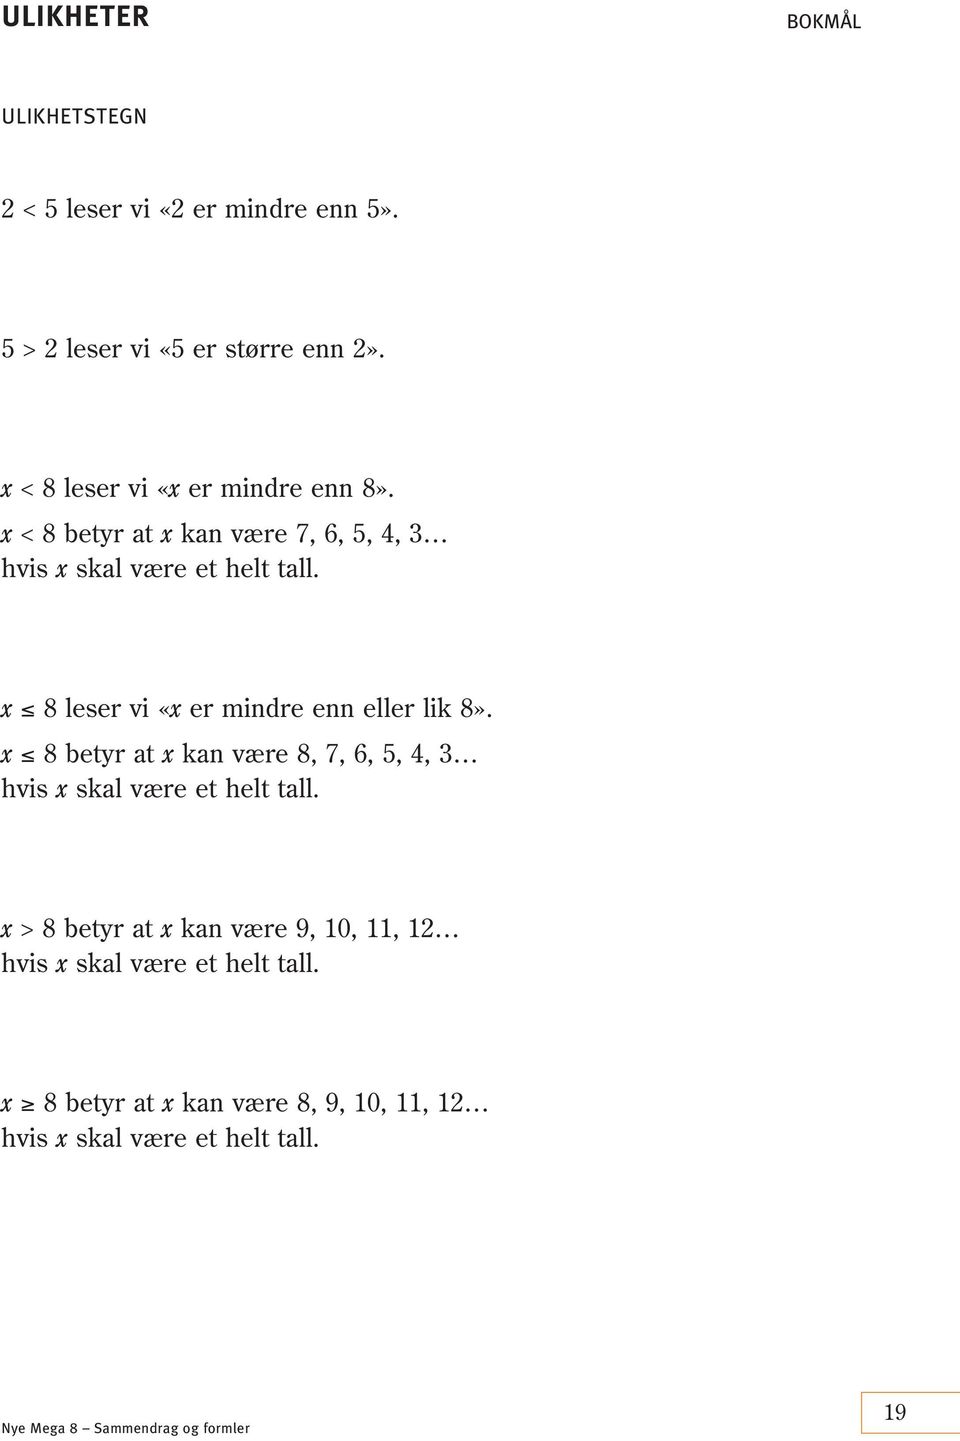 x 8 leser vi «x er mindre enn eller lik 8». x 8 betyr at x kan være 8, 7, 6, 5, 4, 3 hvis x skal være et helt tall.